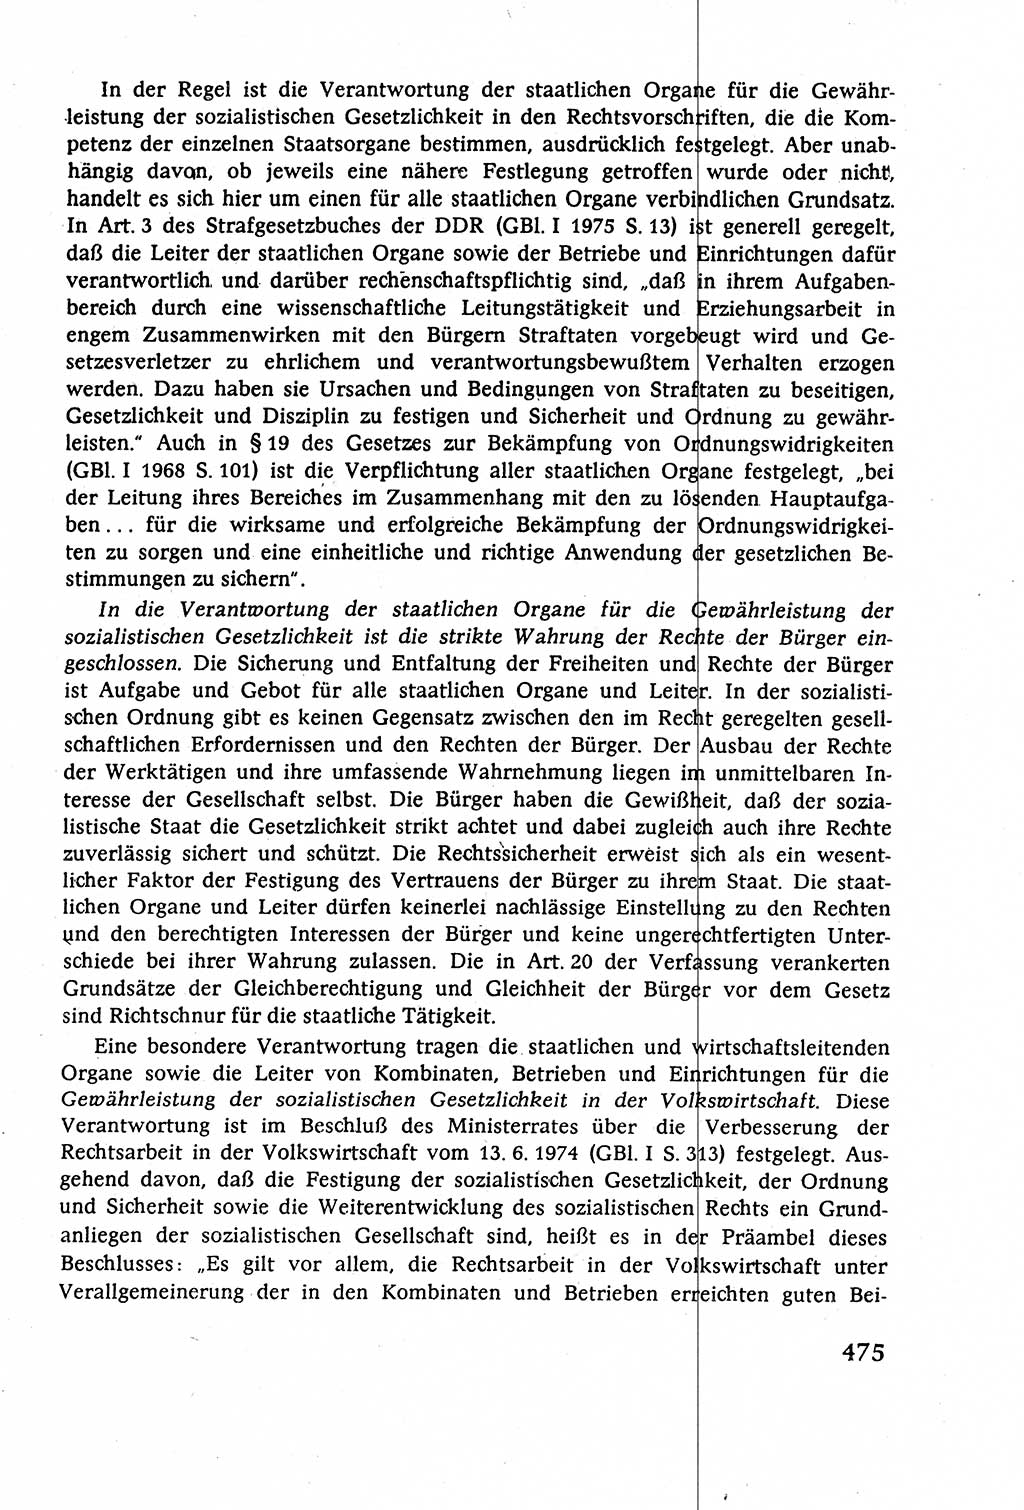 Staatsrecht der DDR (Deutsche Demokratische Republik), Lehrbuch 1977, Seite 475 (St.-R. DDR Lb. 1977, S. 475)